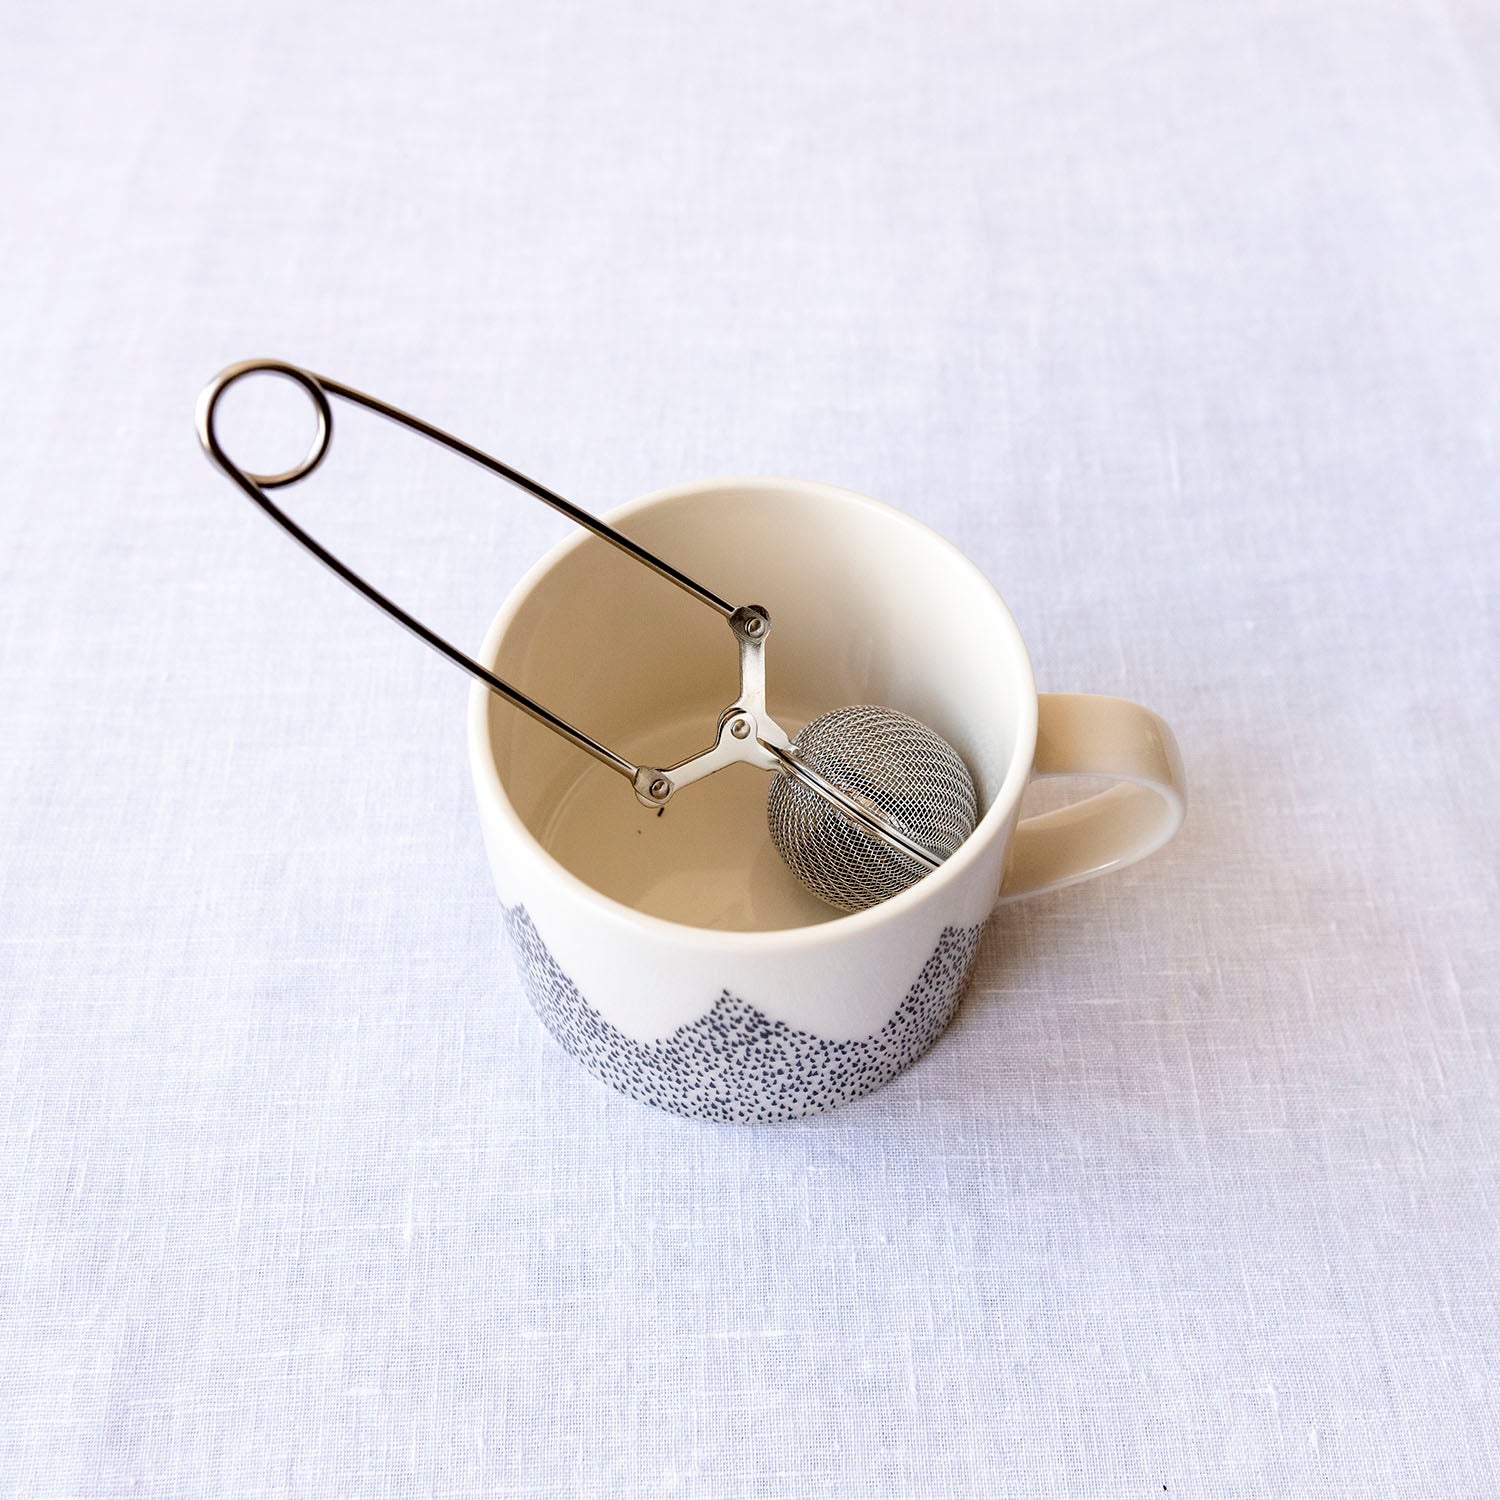 トング式茶こし 45 紅茶 ティーインフューザー 青芳 CASUAL PRODUCT 未使用 - 茶道具・湯呑・急須